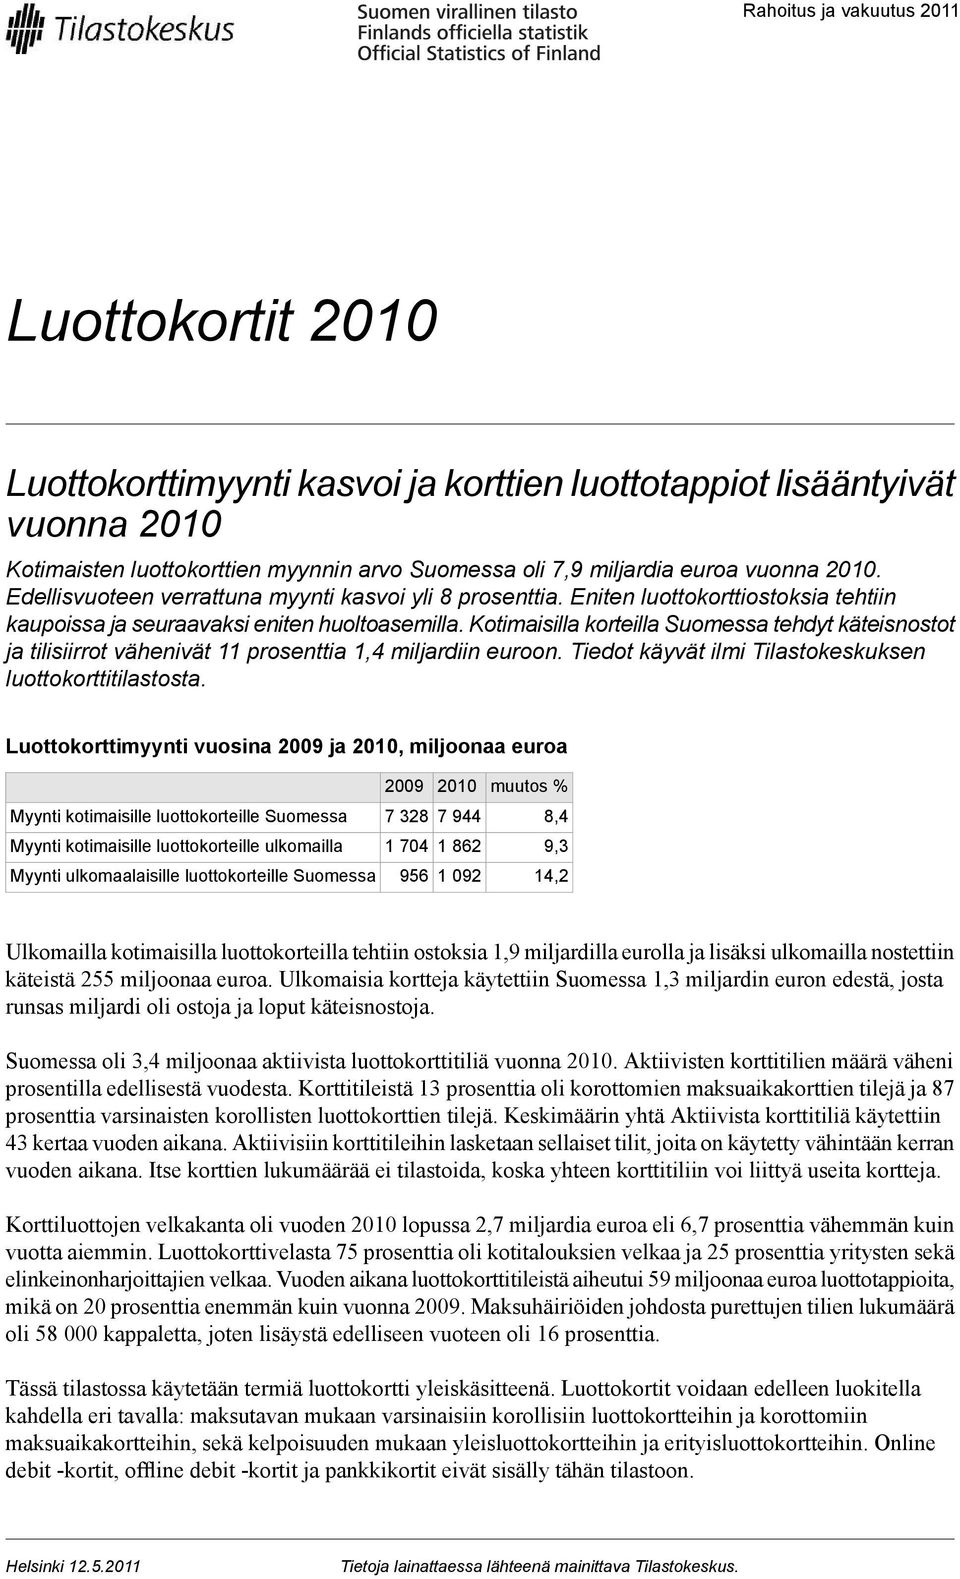 Kotimaisilla korteilla Suomessa tehdyt käteisnostot ja tilisiirrot vähenivät 11 prosenttia 1,4 miljardiin euroon. Tiedot käyvät ilmi Tilastokeskuksen luottokorttitilastosta.